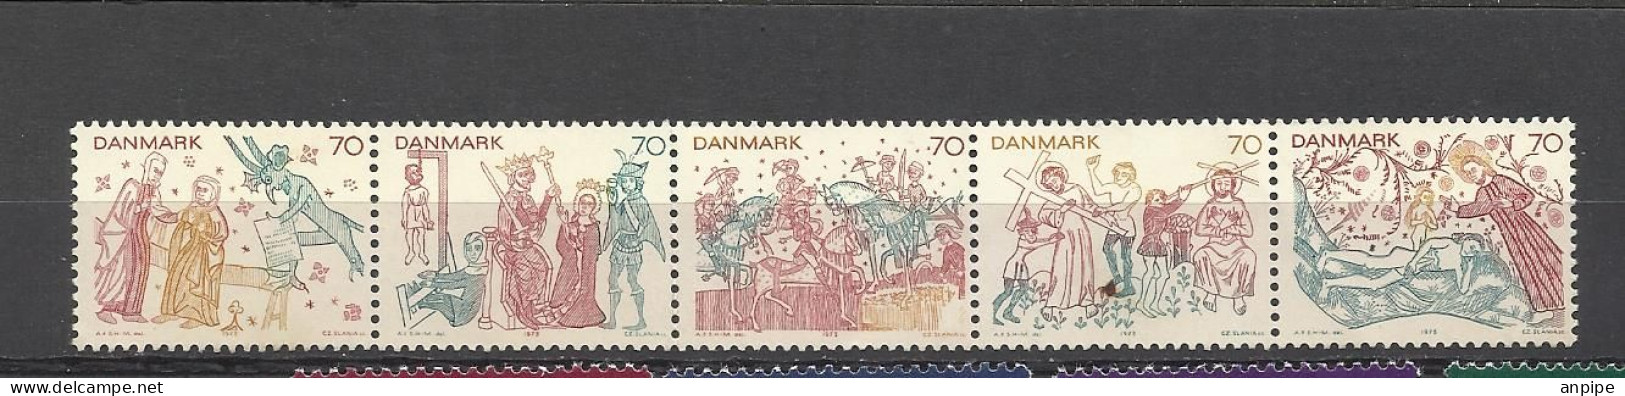 DINAMARCA, 1973 - Unused Stamps